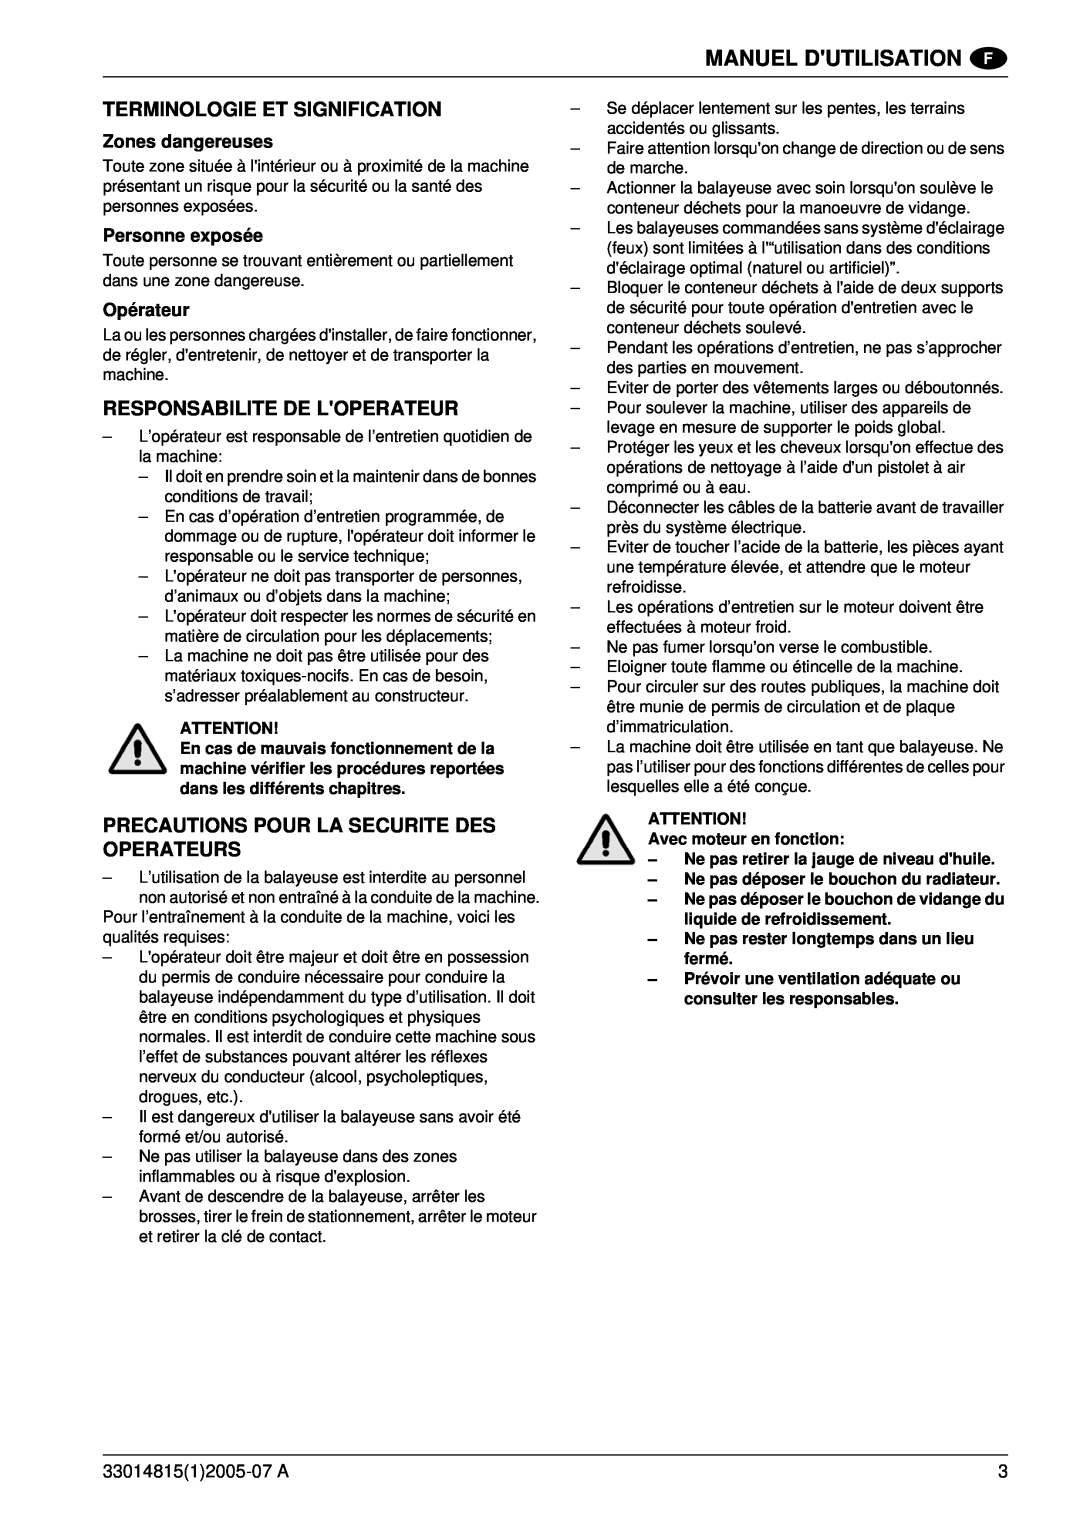 Nilfisk-Advance America SR 1700D 2W D Terminologie Et Signification, Responsabilite De Loperateur, Zones dangereuses 